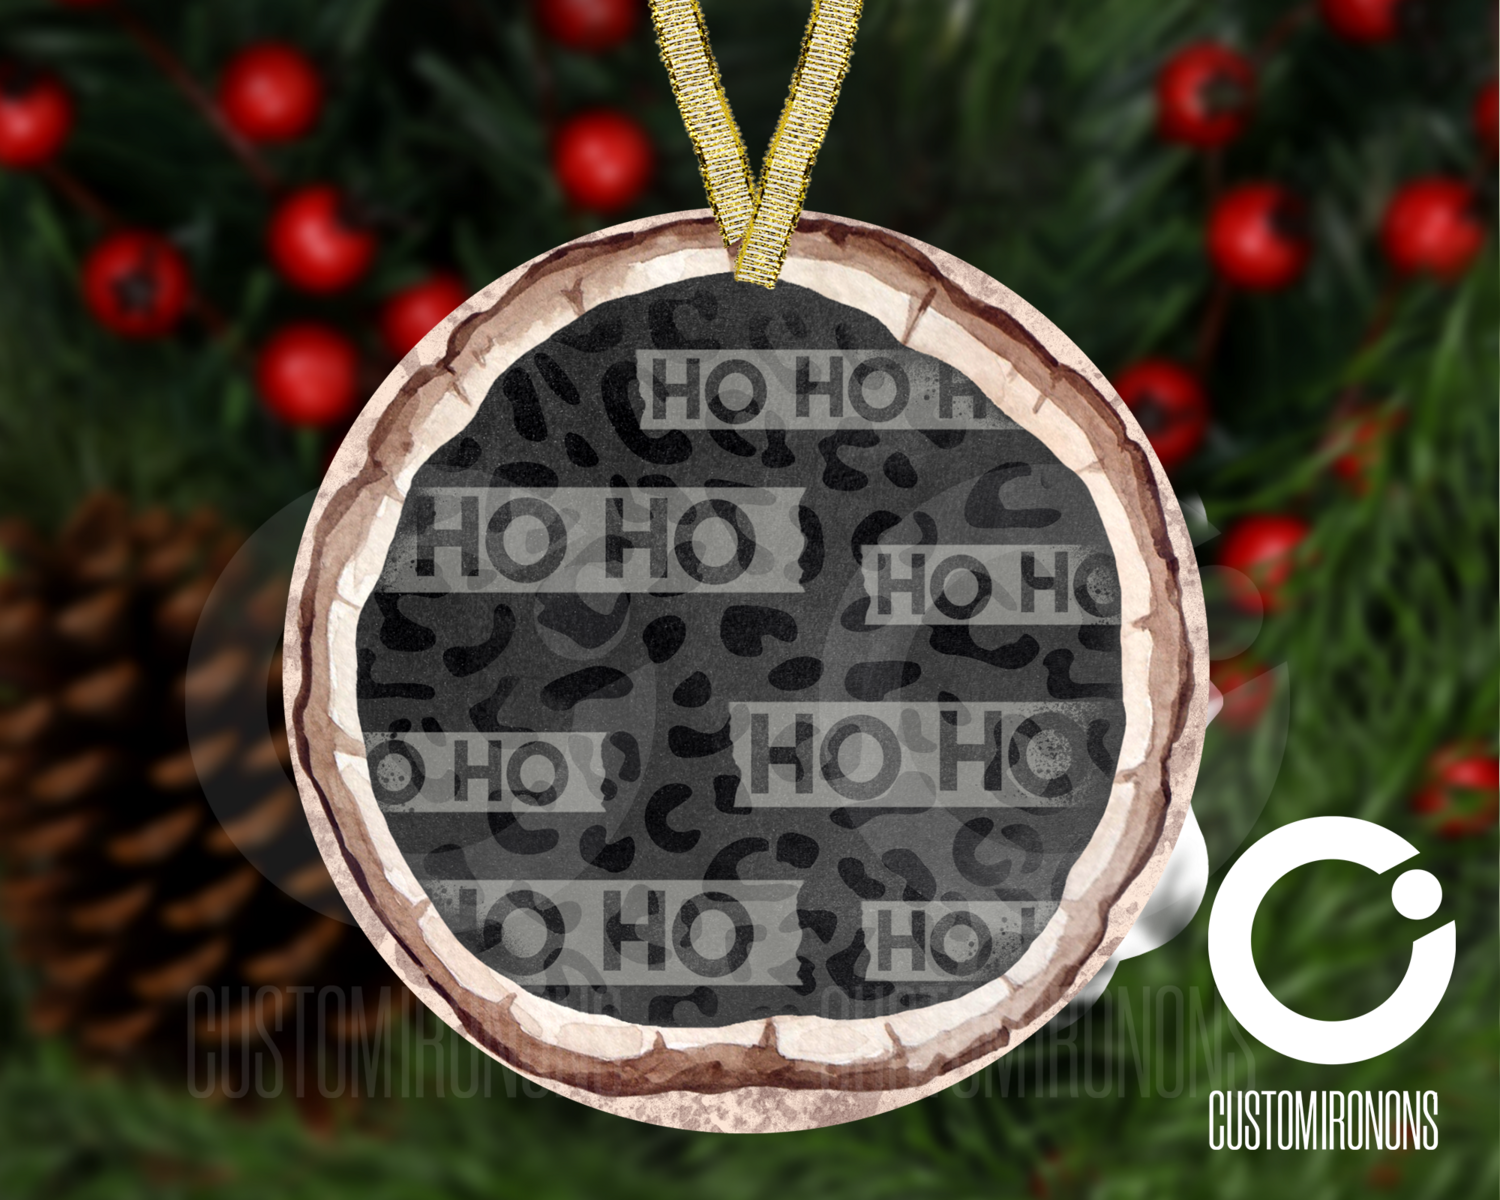 Cheetah Ho Ho Ho Wood Ornament - Winter Holiday Frame Ornament